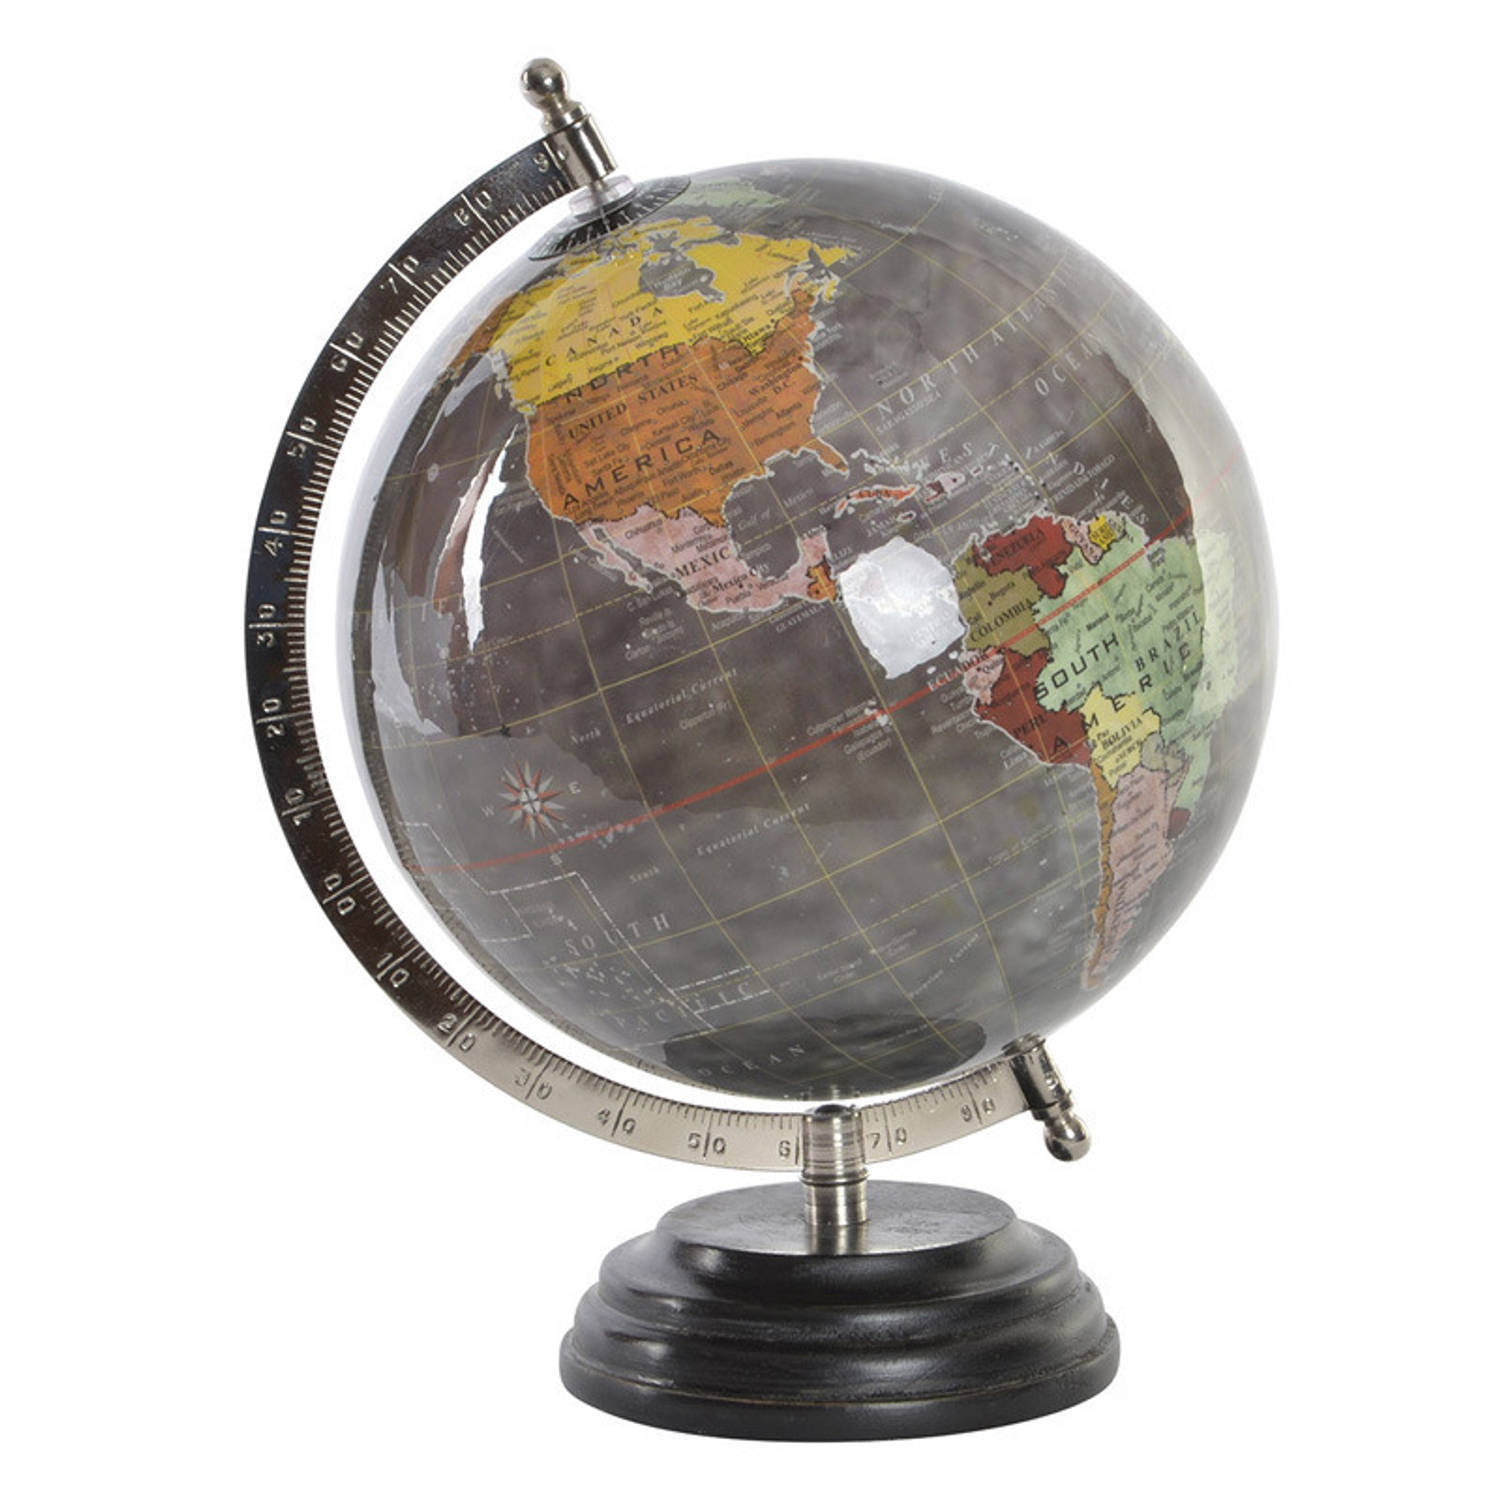 Items Deco Wereldbol/globe op voet - kunststof - grijs - home decoratie artikel - D20 x H28 cm